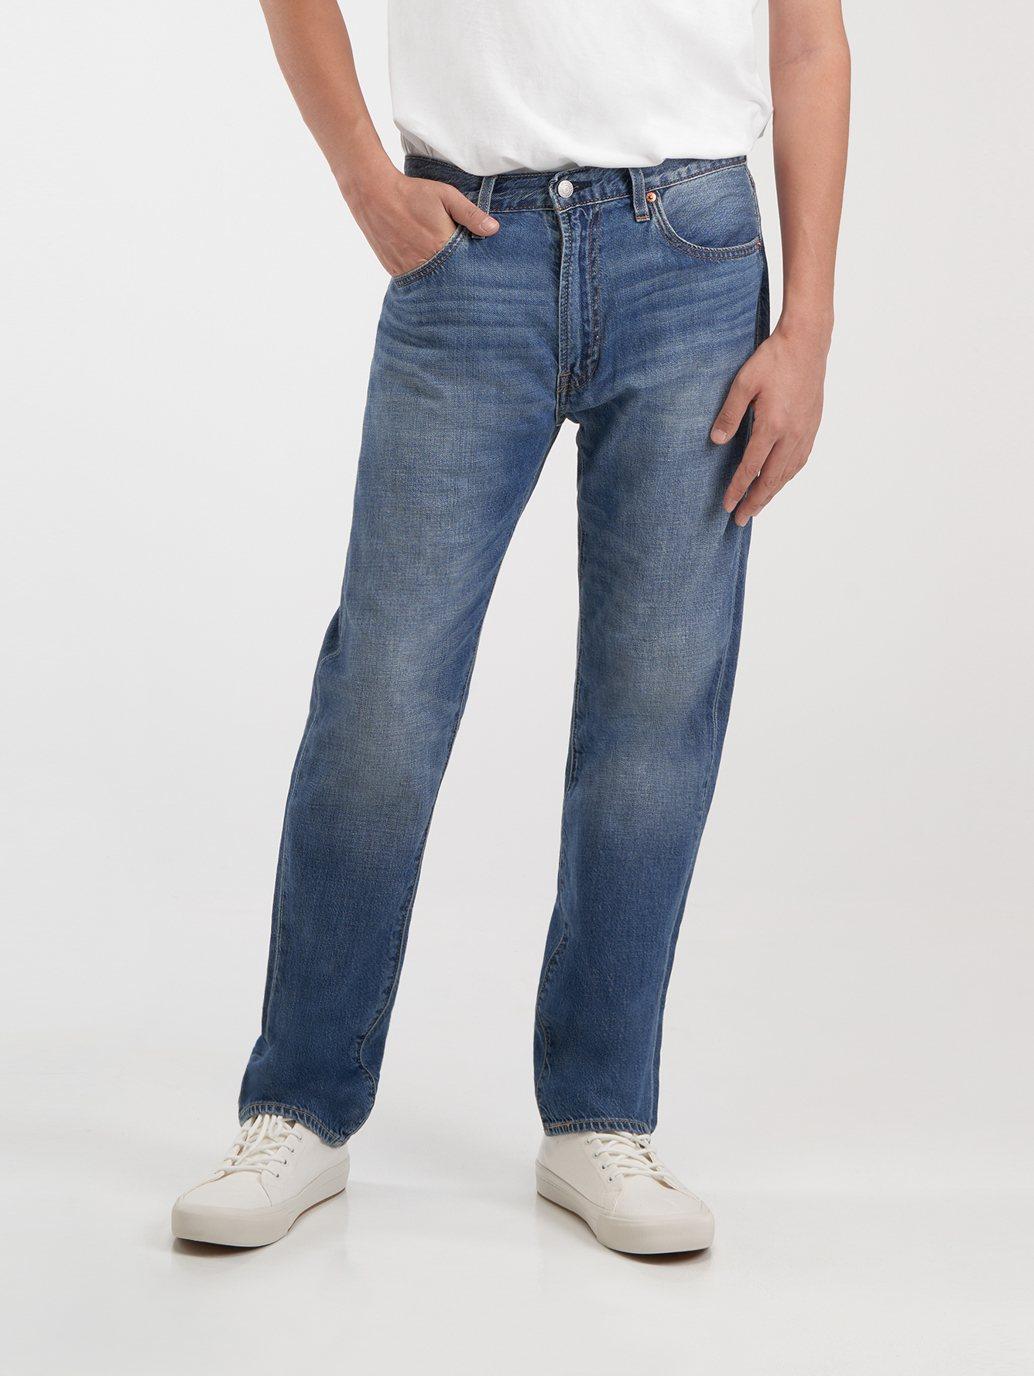 Buy Levi's® Men's 551™ Z Authentic Straight Jeans | Levi’s® Official ...